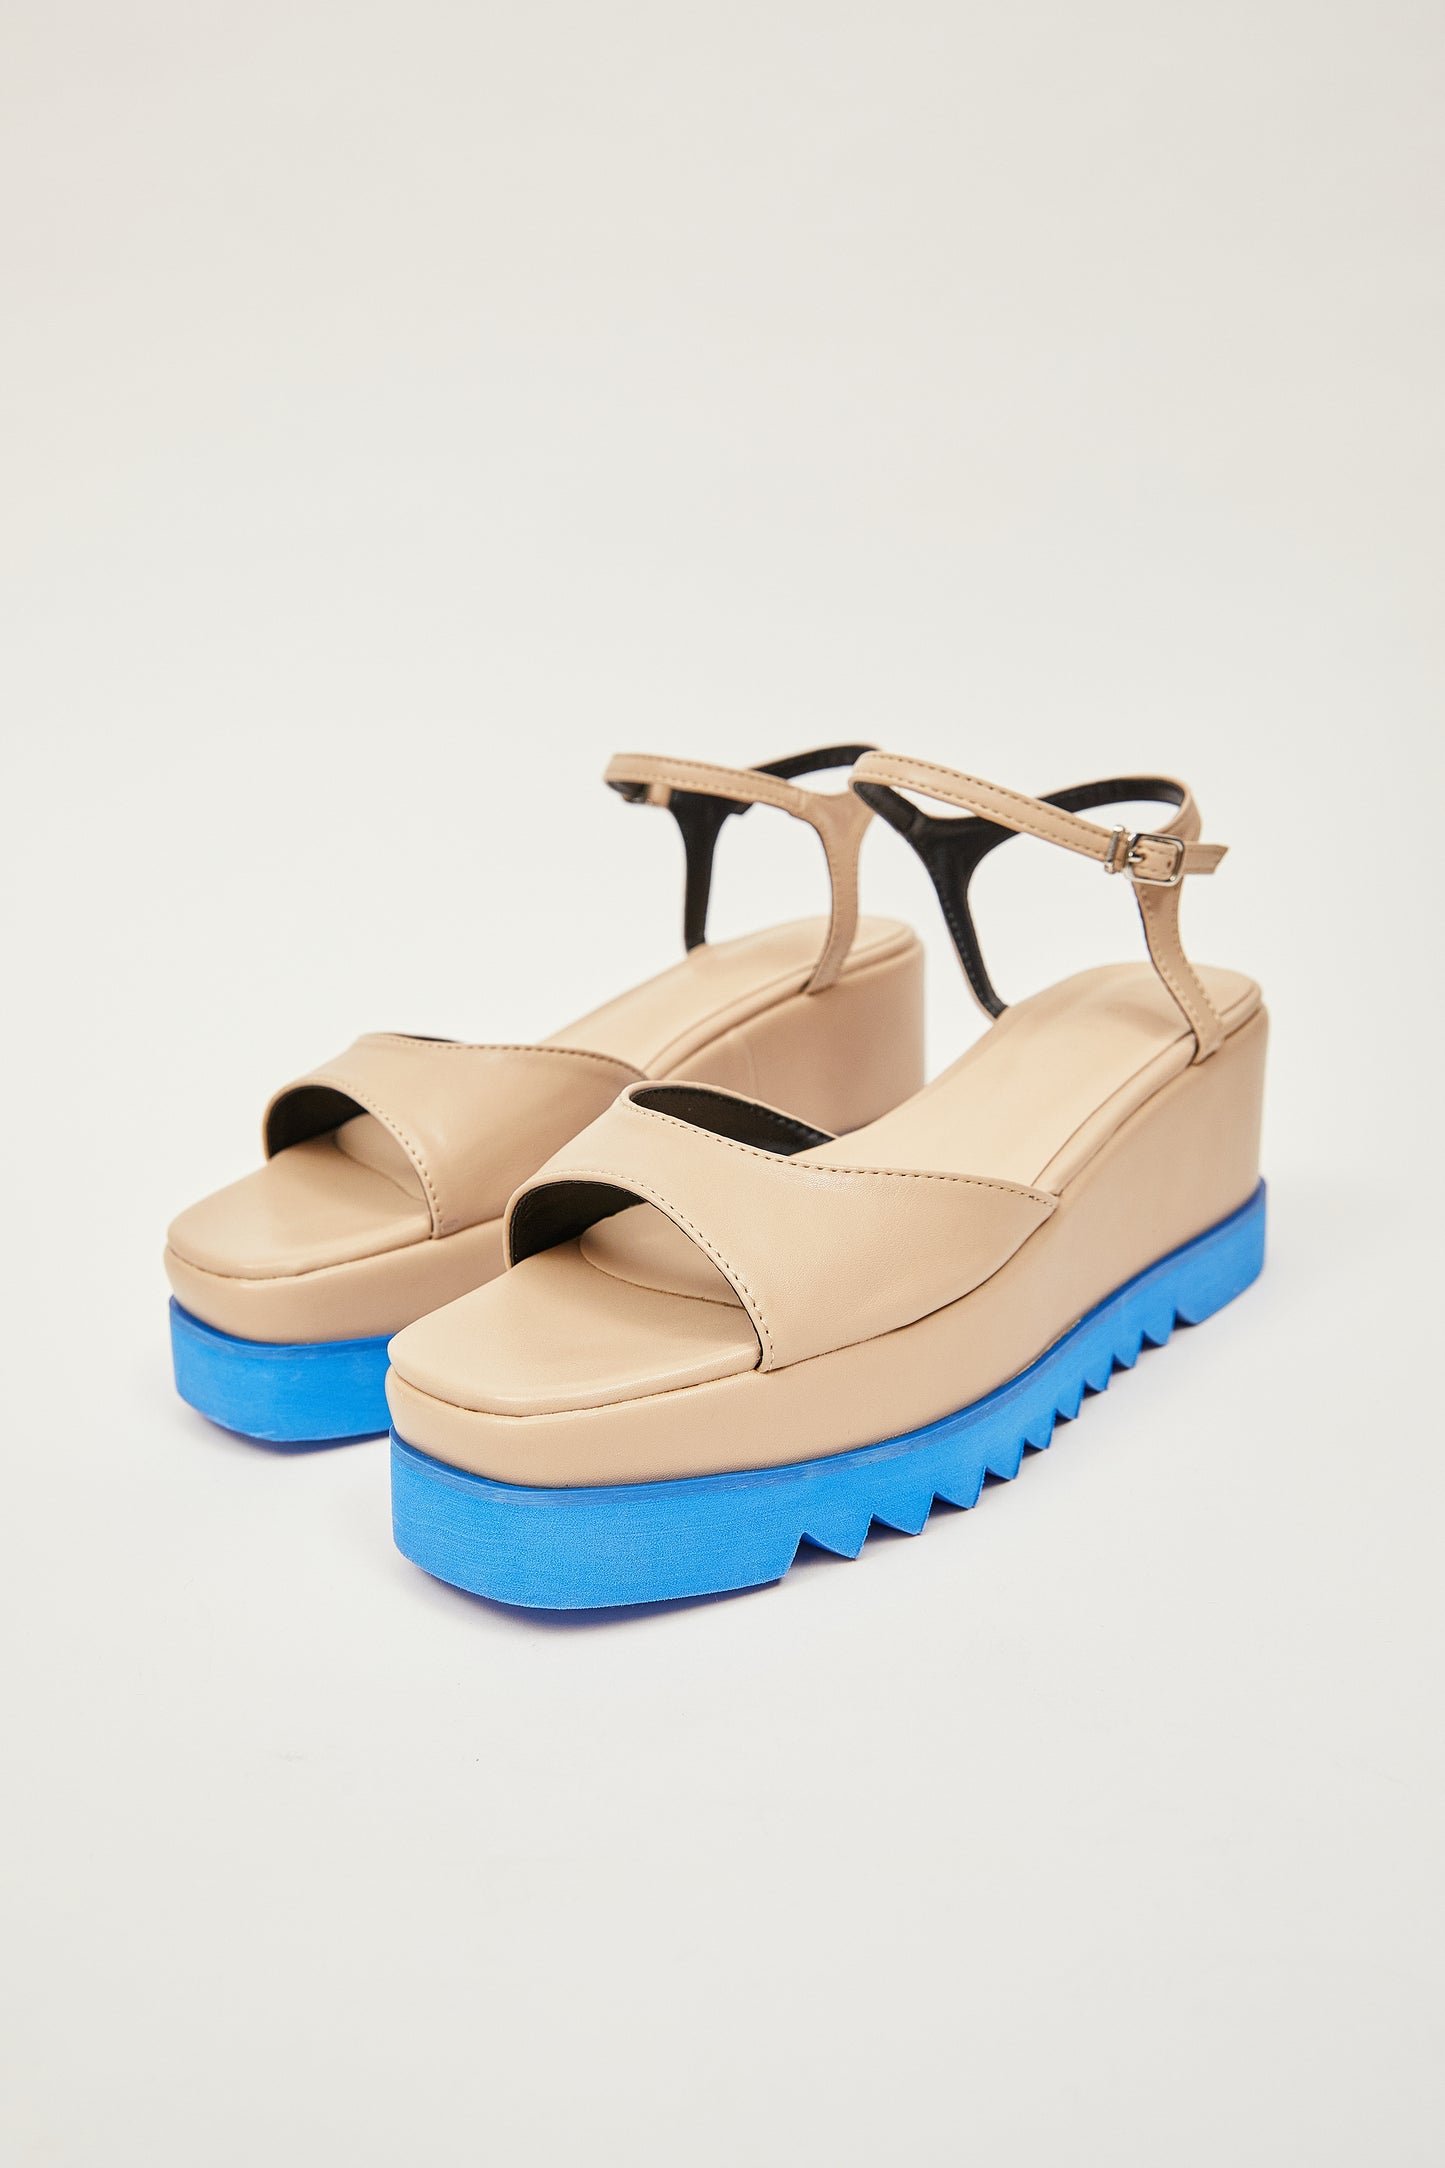 Two-Tone High Wedge Sandals, Beige & Blue